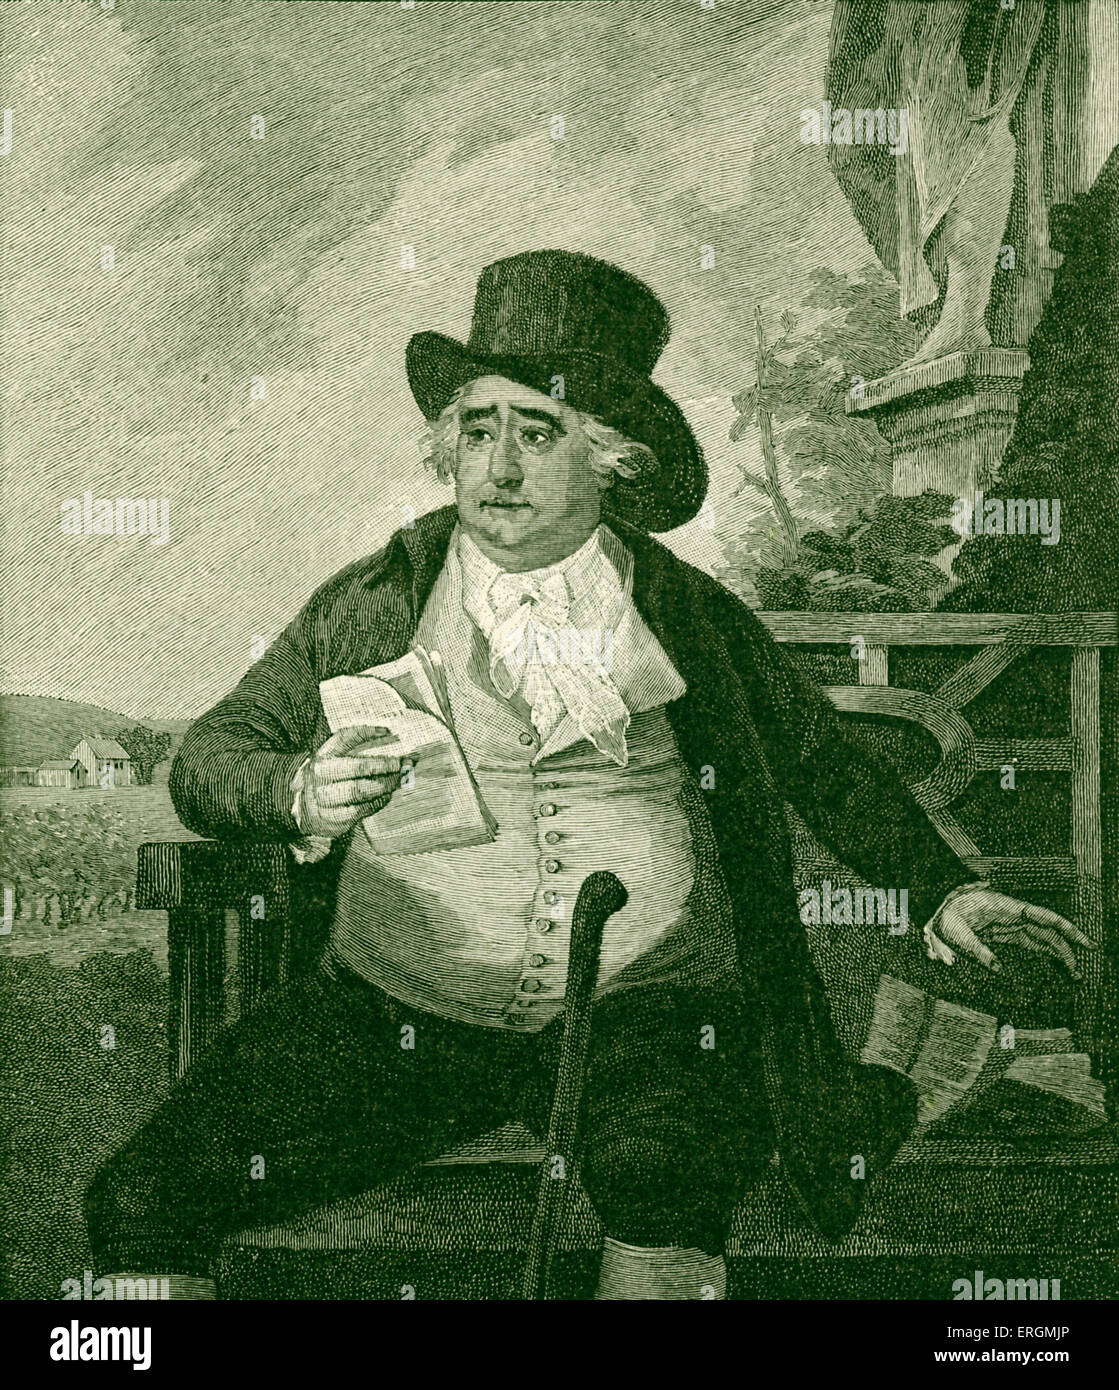 Charles James Fox (1749-1806) war ein Whig Politiker, bemerkenswert für seinen Widerstand gegen absolutistische Monarchie, den Sklavenhandel und seine politische Rivalität mit William Pitt der jüngere. Stockfoto